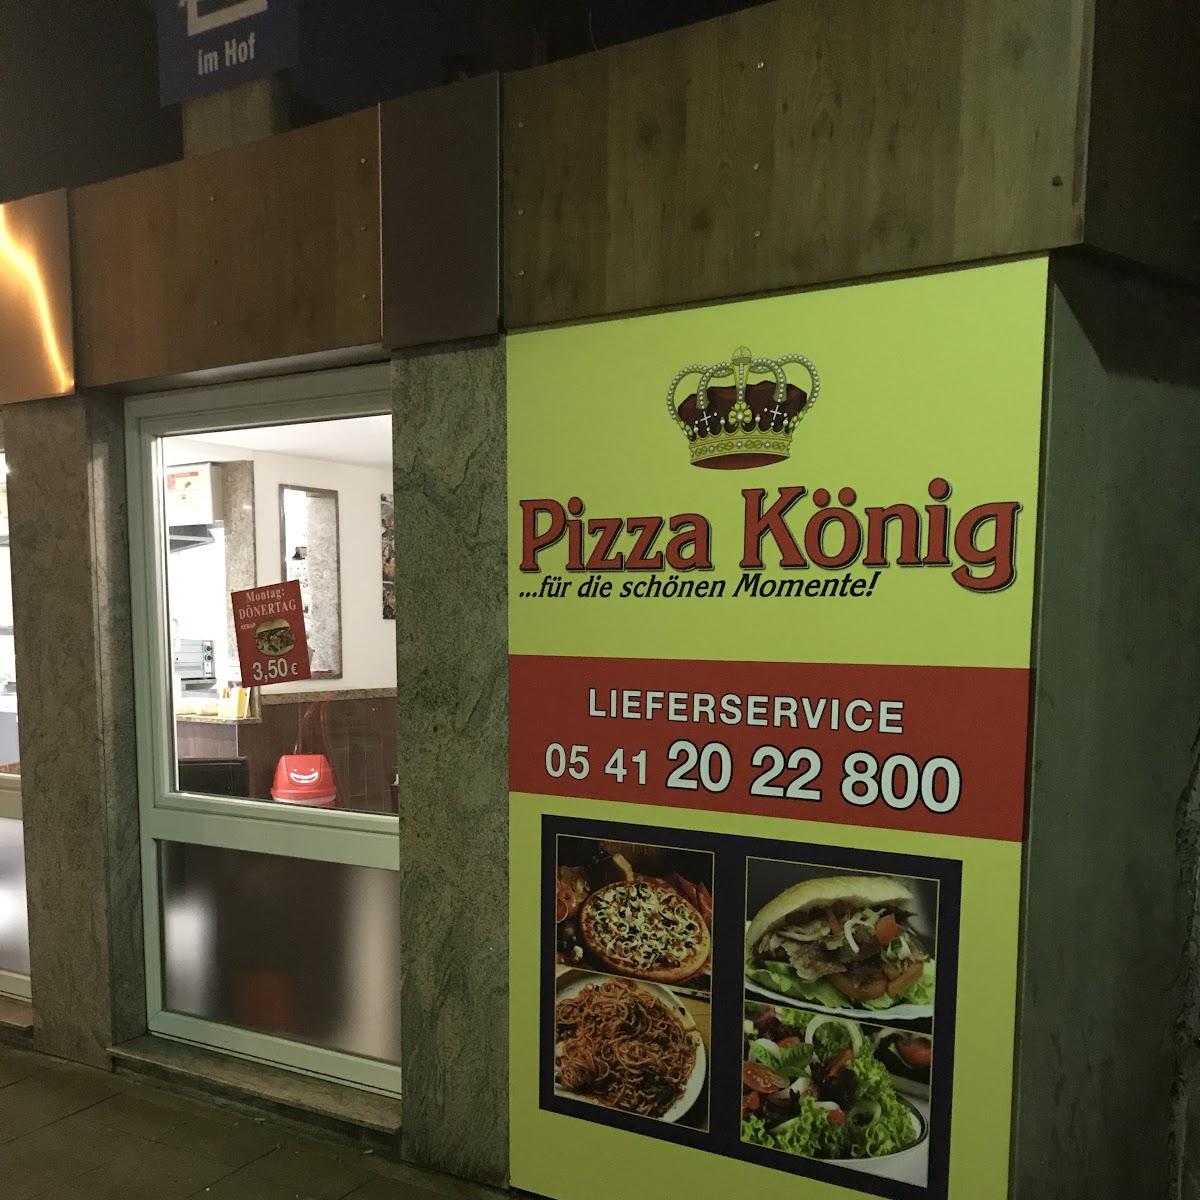 Restaurant "Pizza König" in Osnabrück